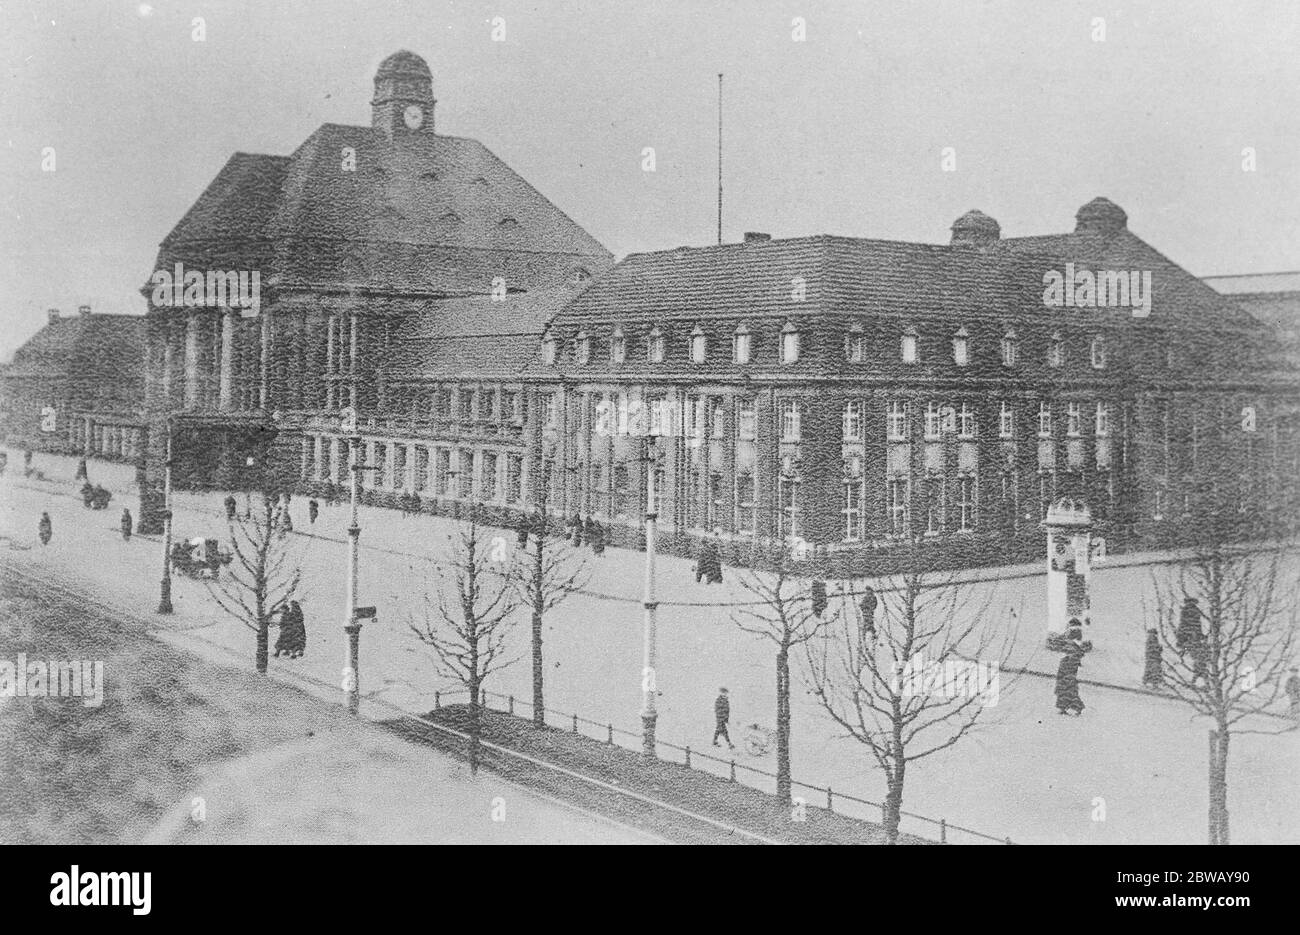 marcia francese a Dortmund . Estendendo la loro occupazione nella Ruhr , le truppe francesi entrarono nell' importante città di Dortmund . La grande stazione ferroviaria di Dortmund . 17 gennaio 1923 Foto Stock